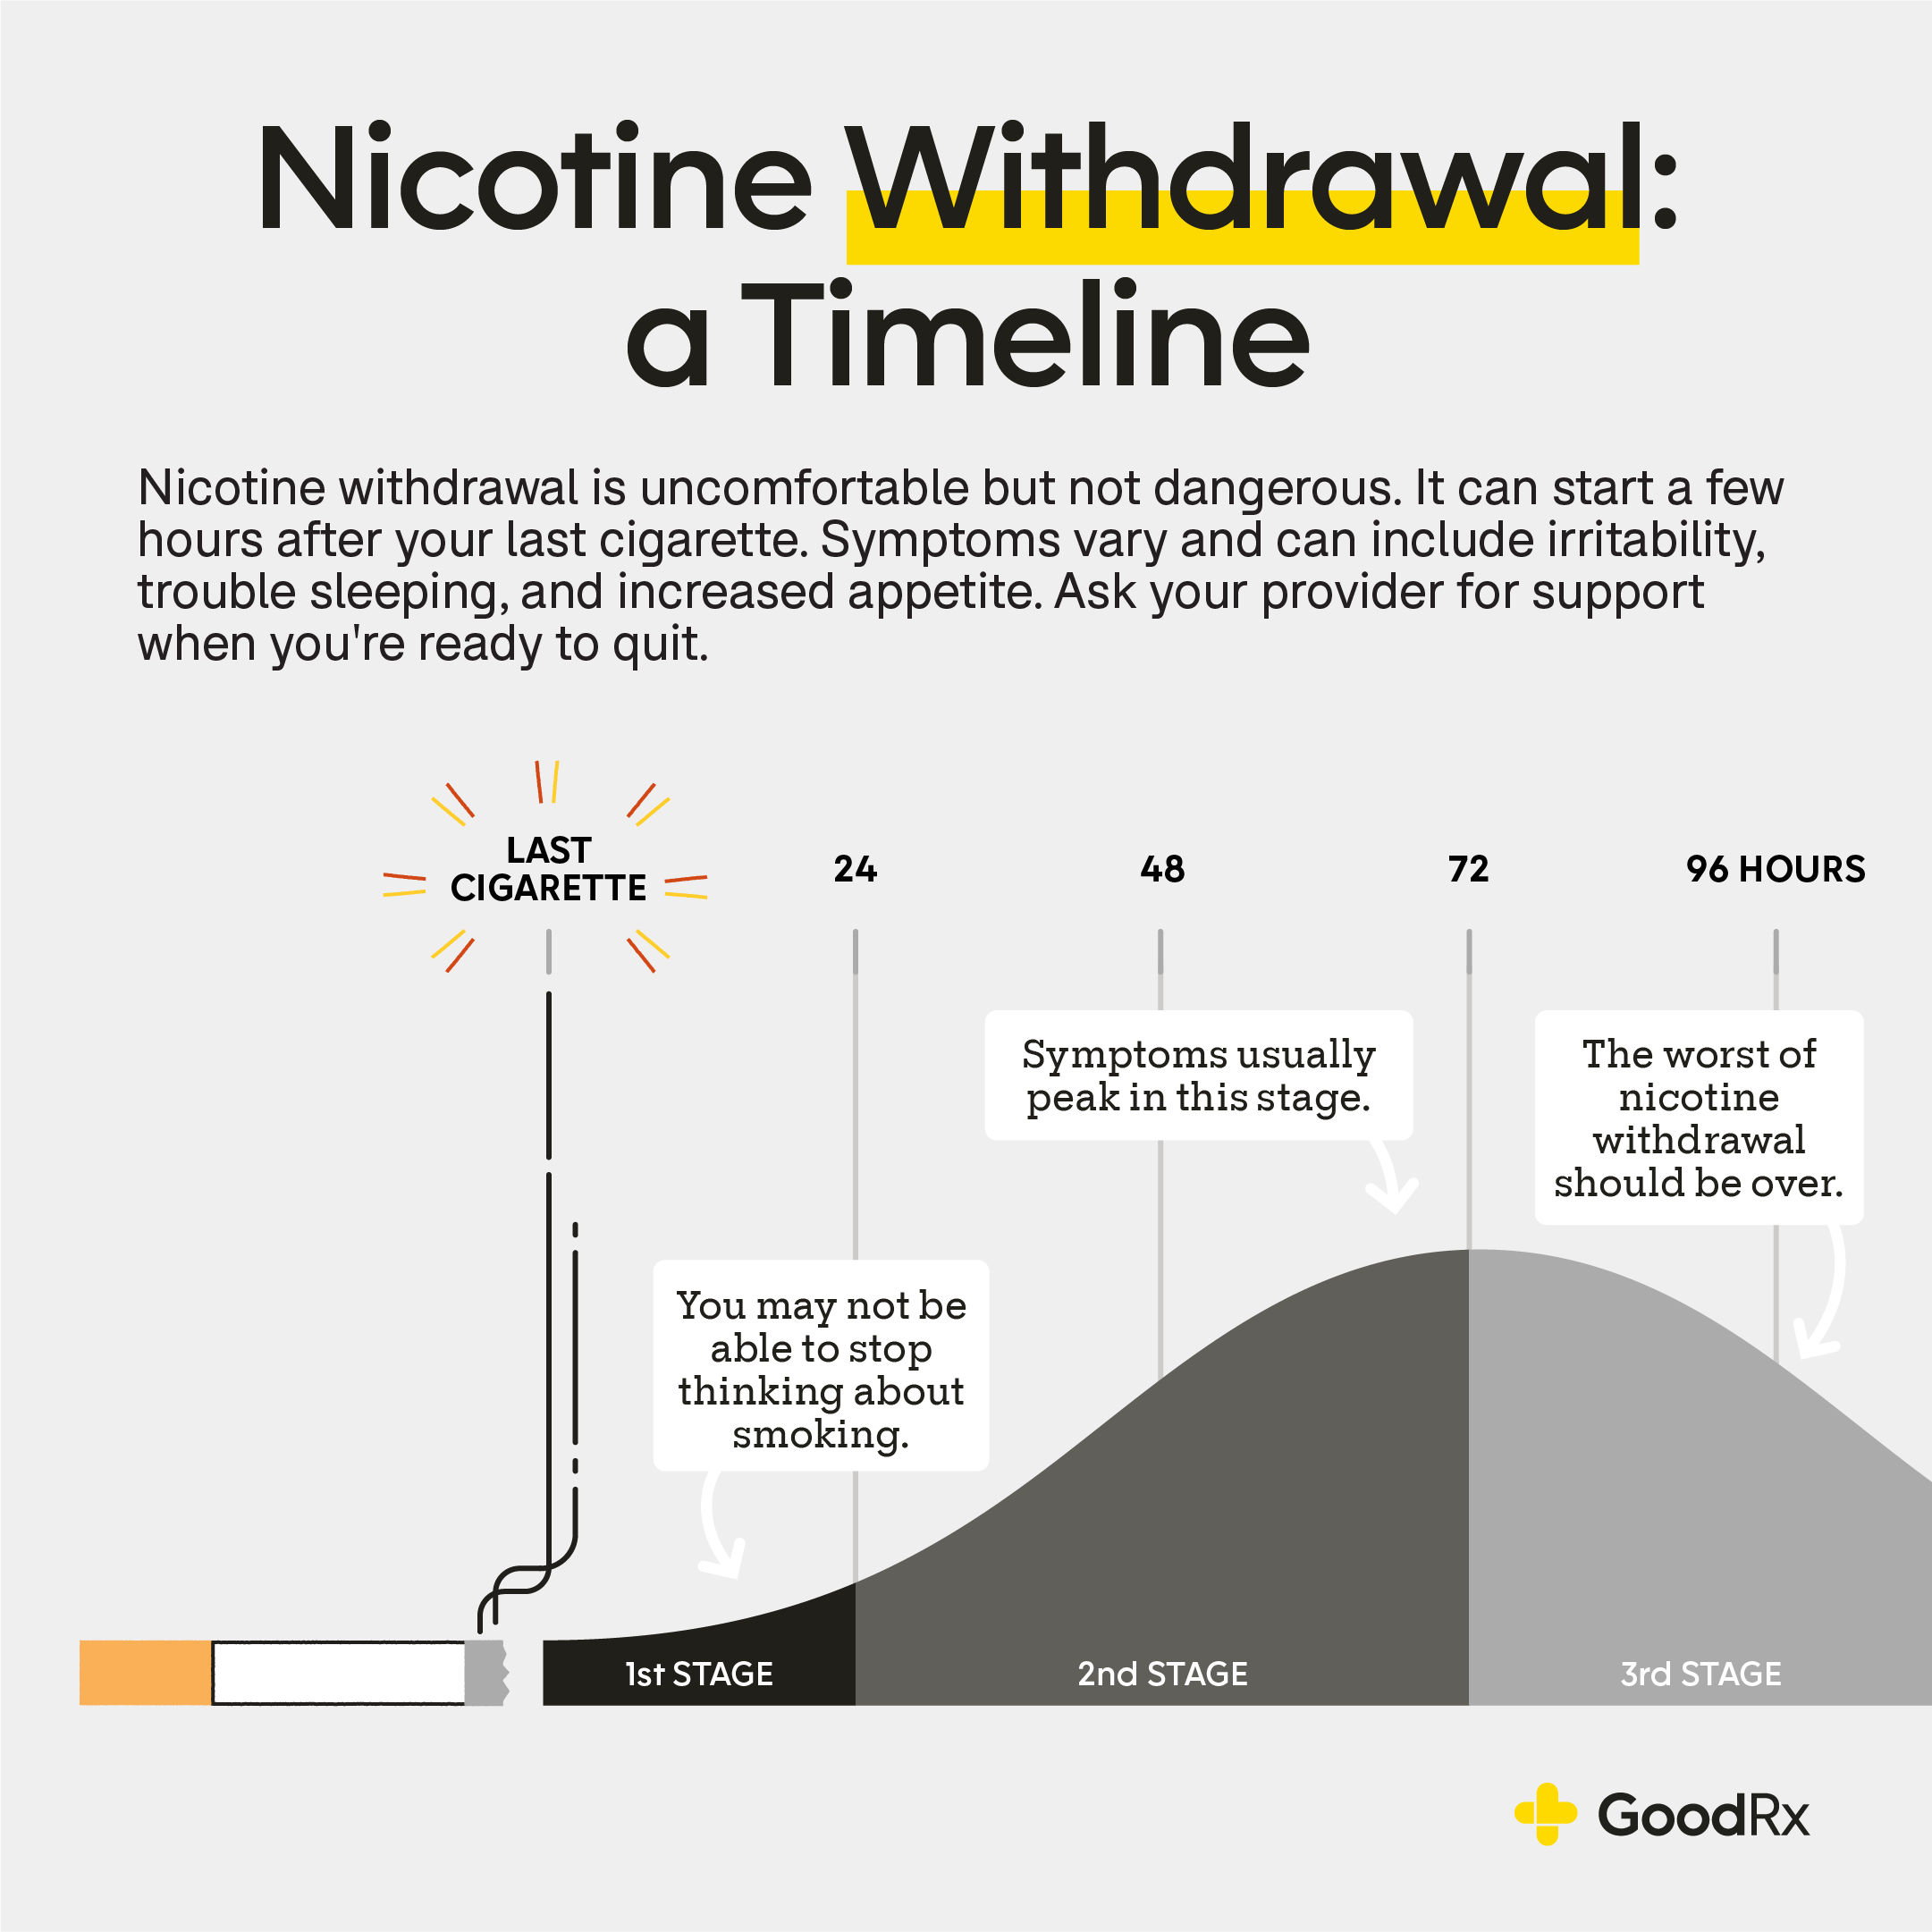 When Does Nicotine Withdrawal Peak?